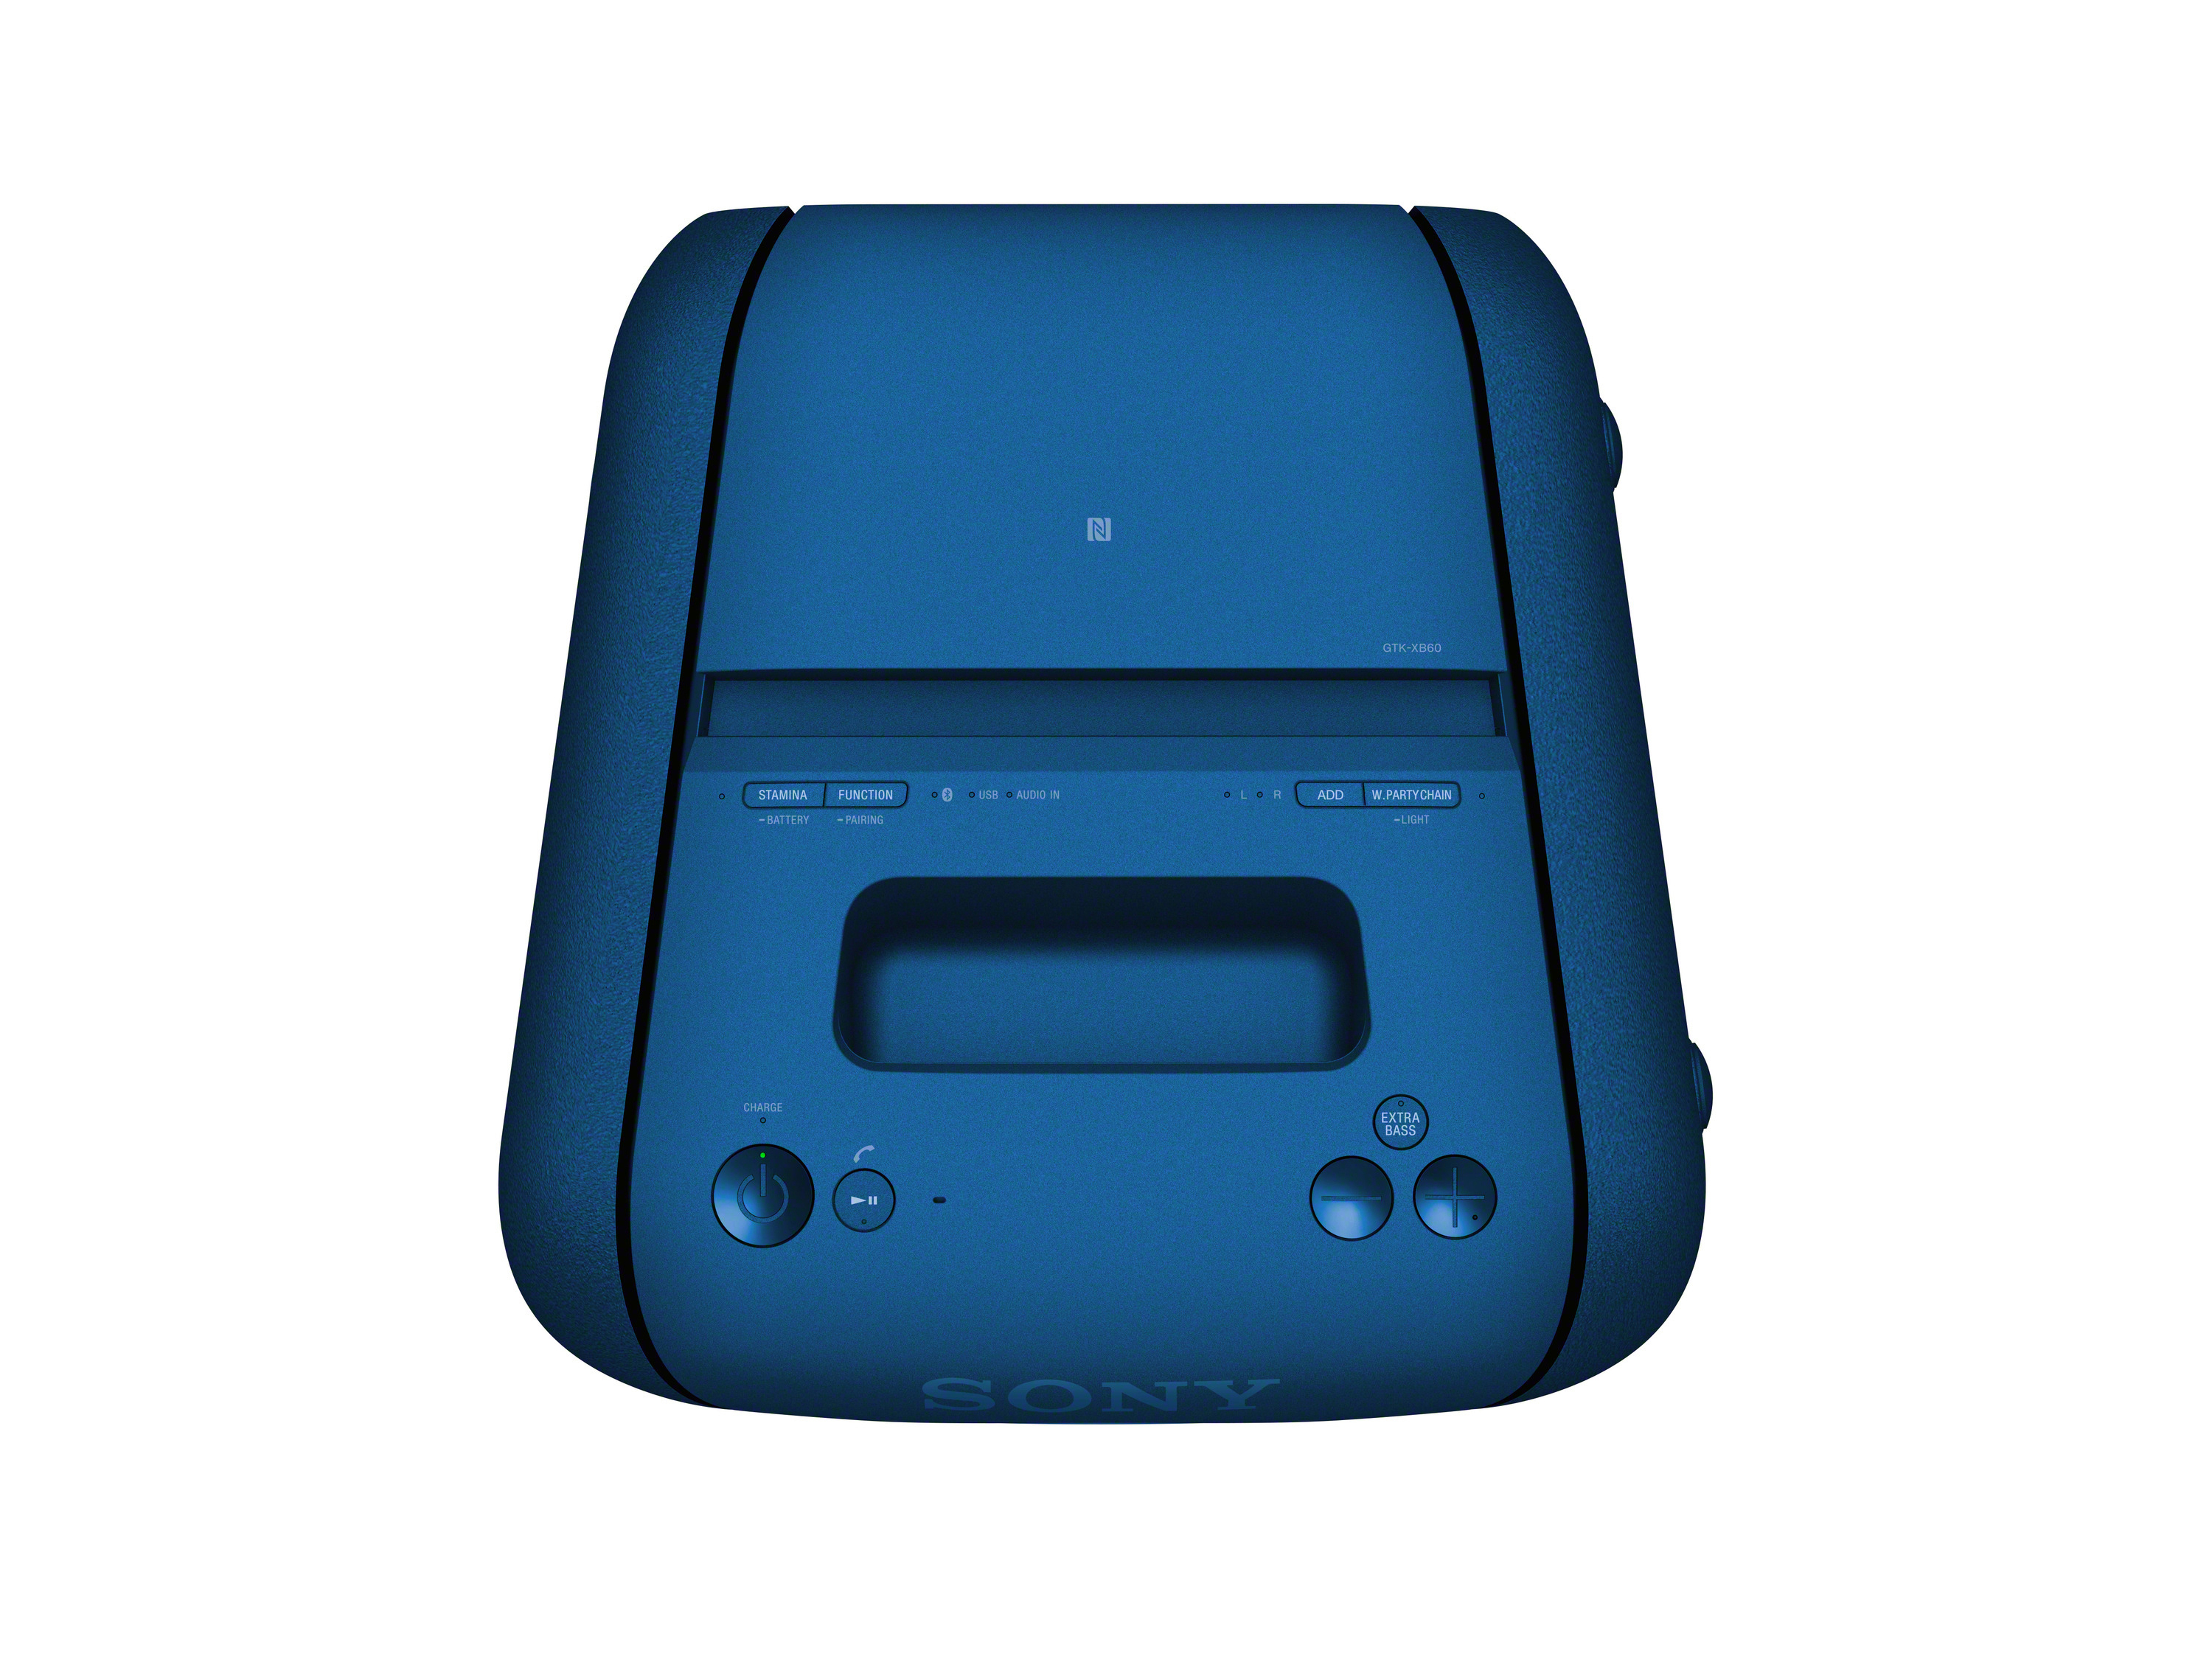 SONY Chain Blau GTK-XB60 Party Lautsprecher, Wireless Bluetooth